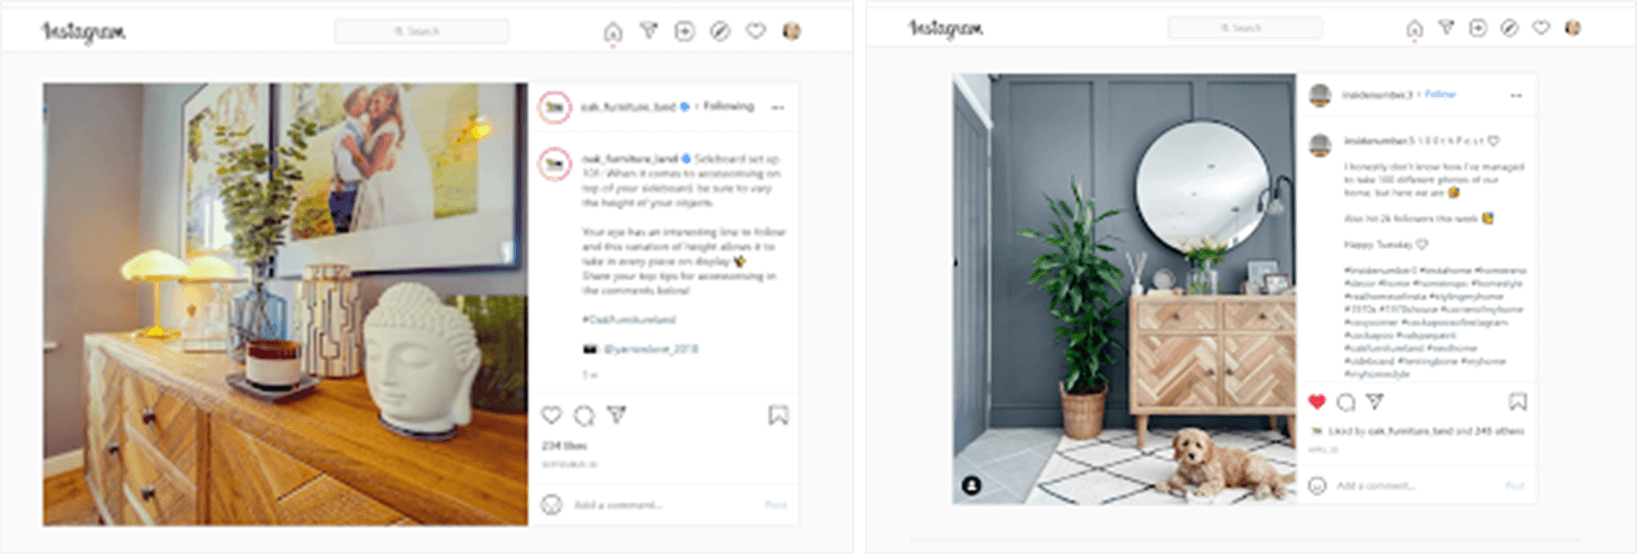 Publications Instagram présentant les produits Oak Furnitureland